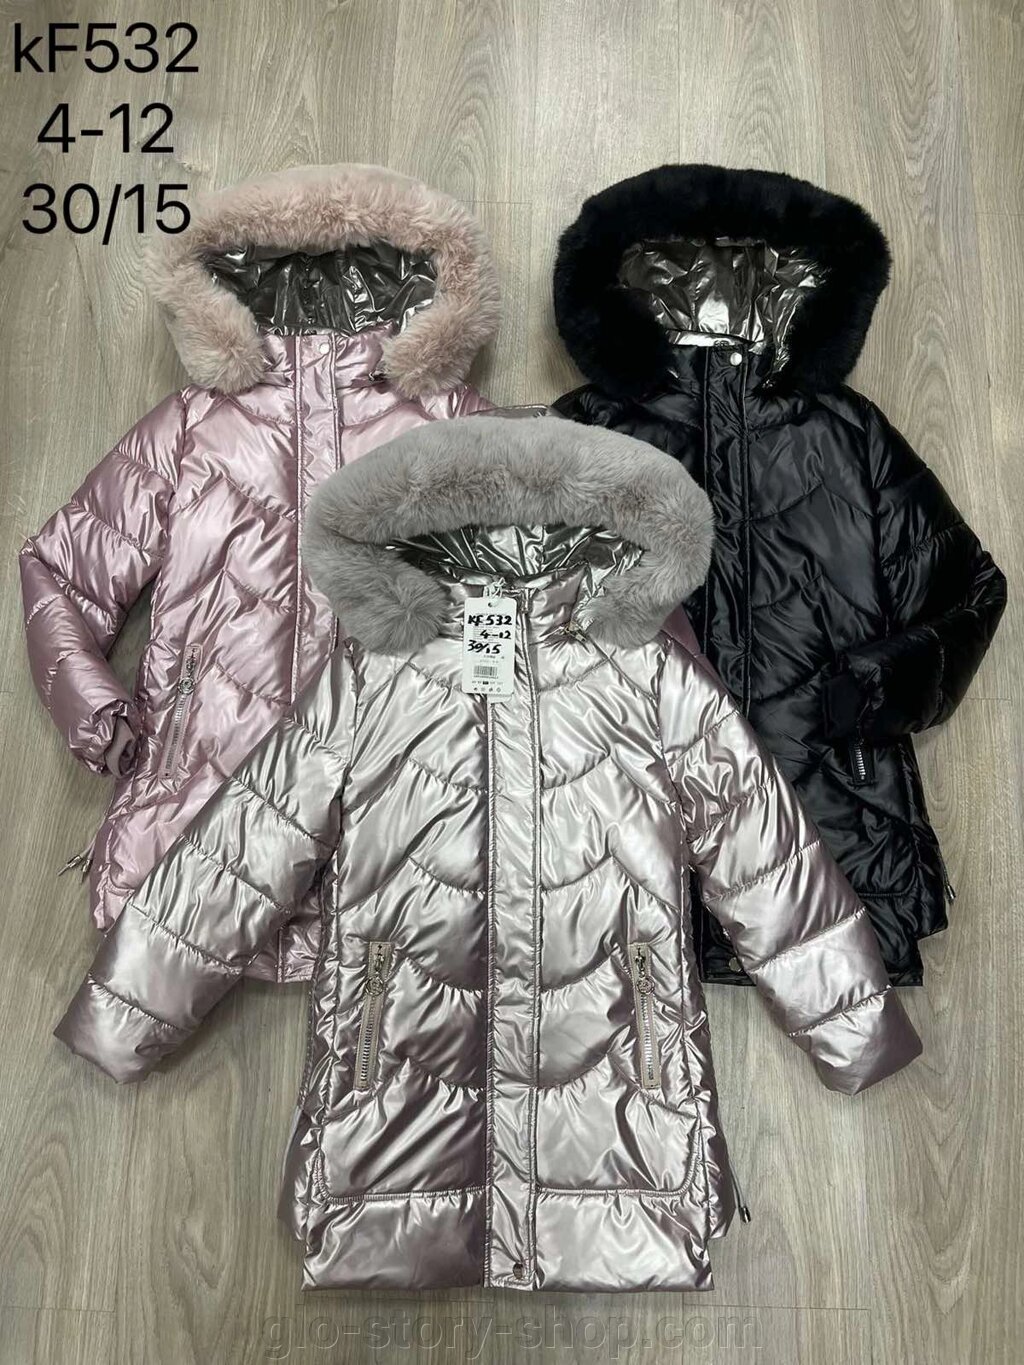 Курточки для дівчат зима від компанії Glo-story - фото 1